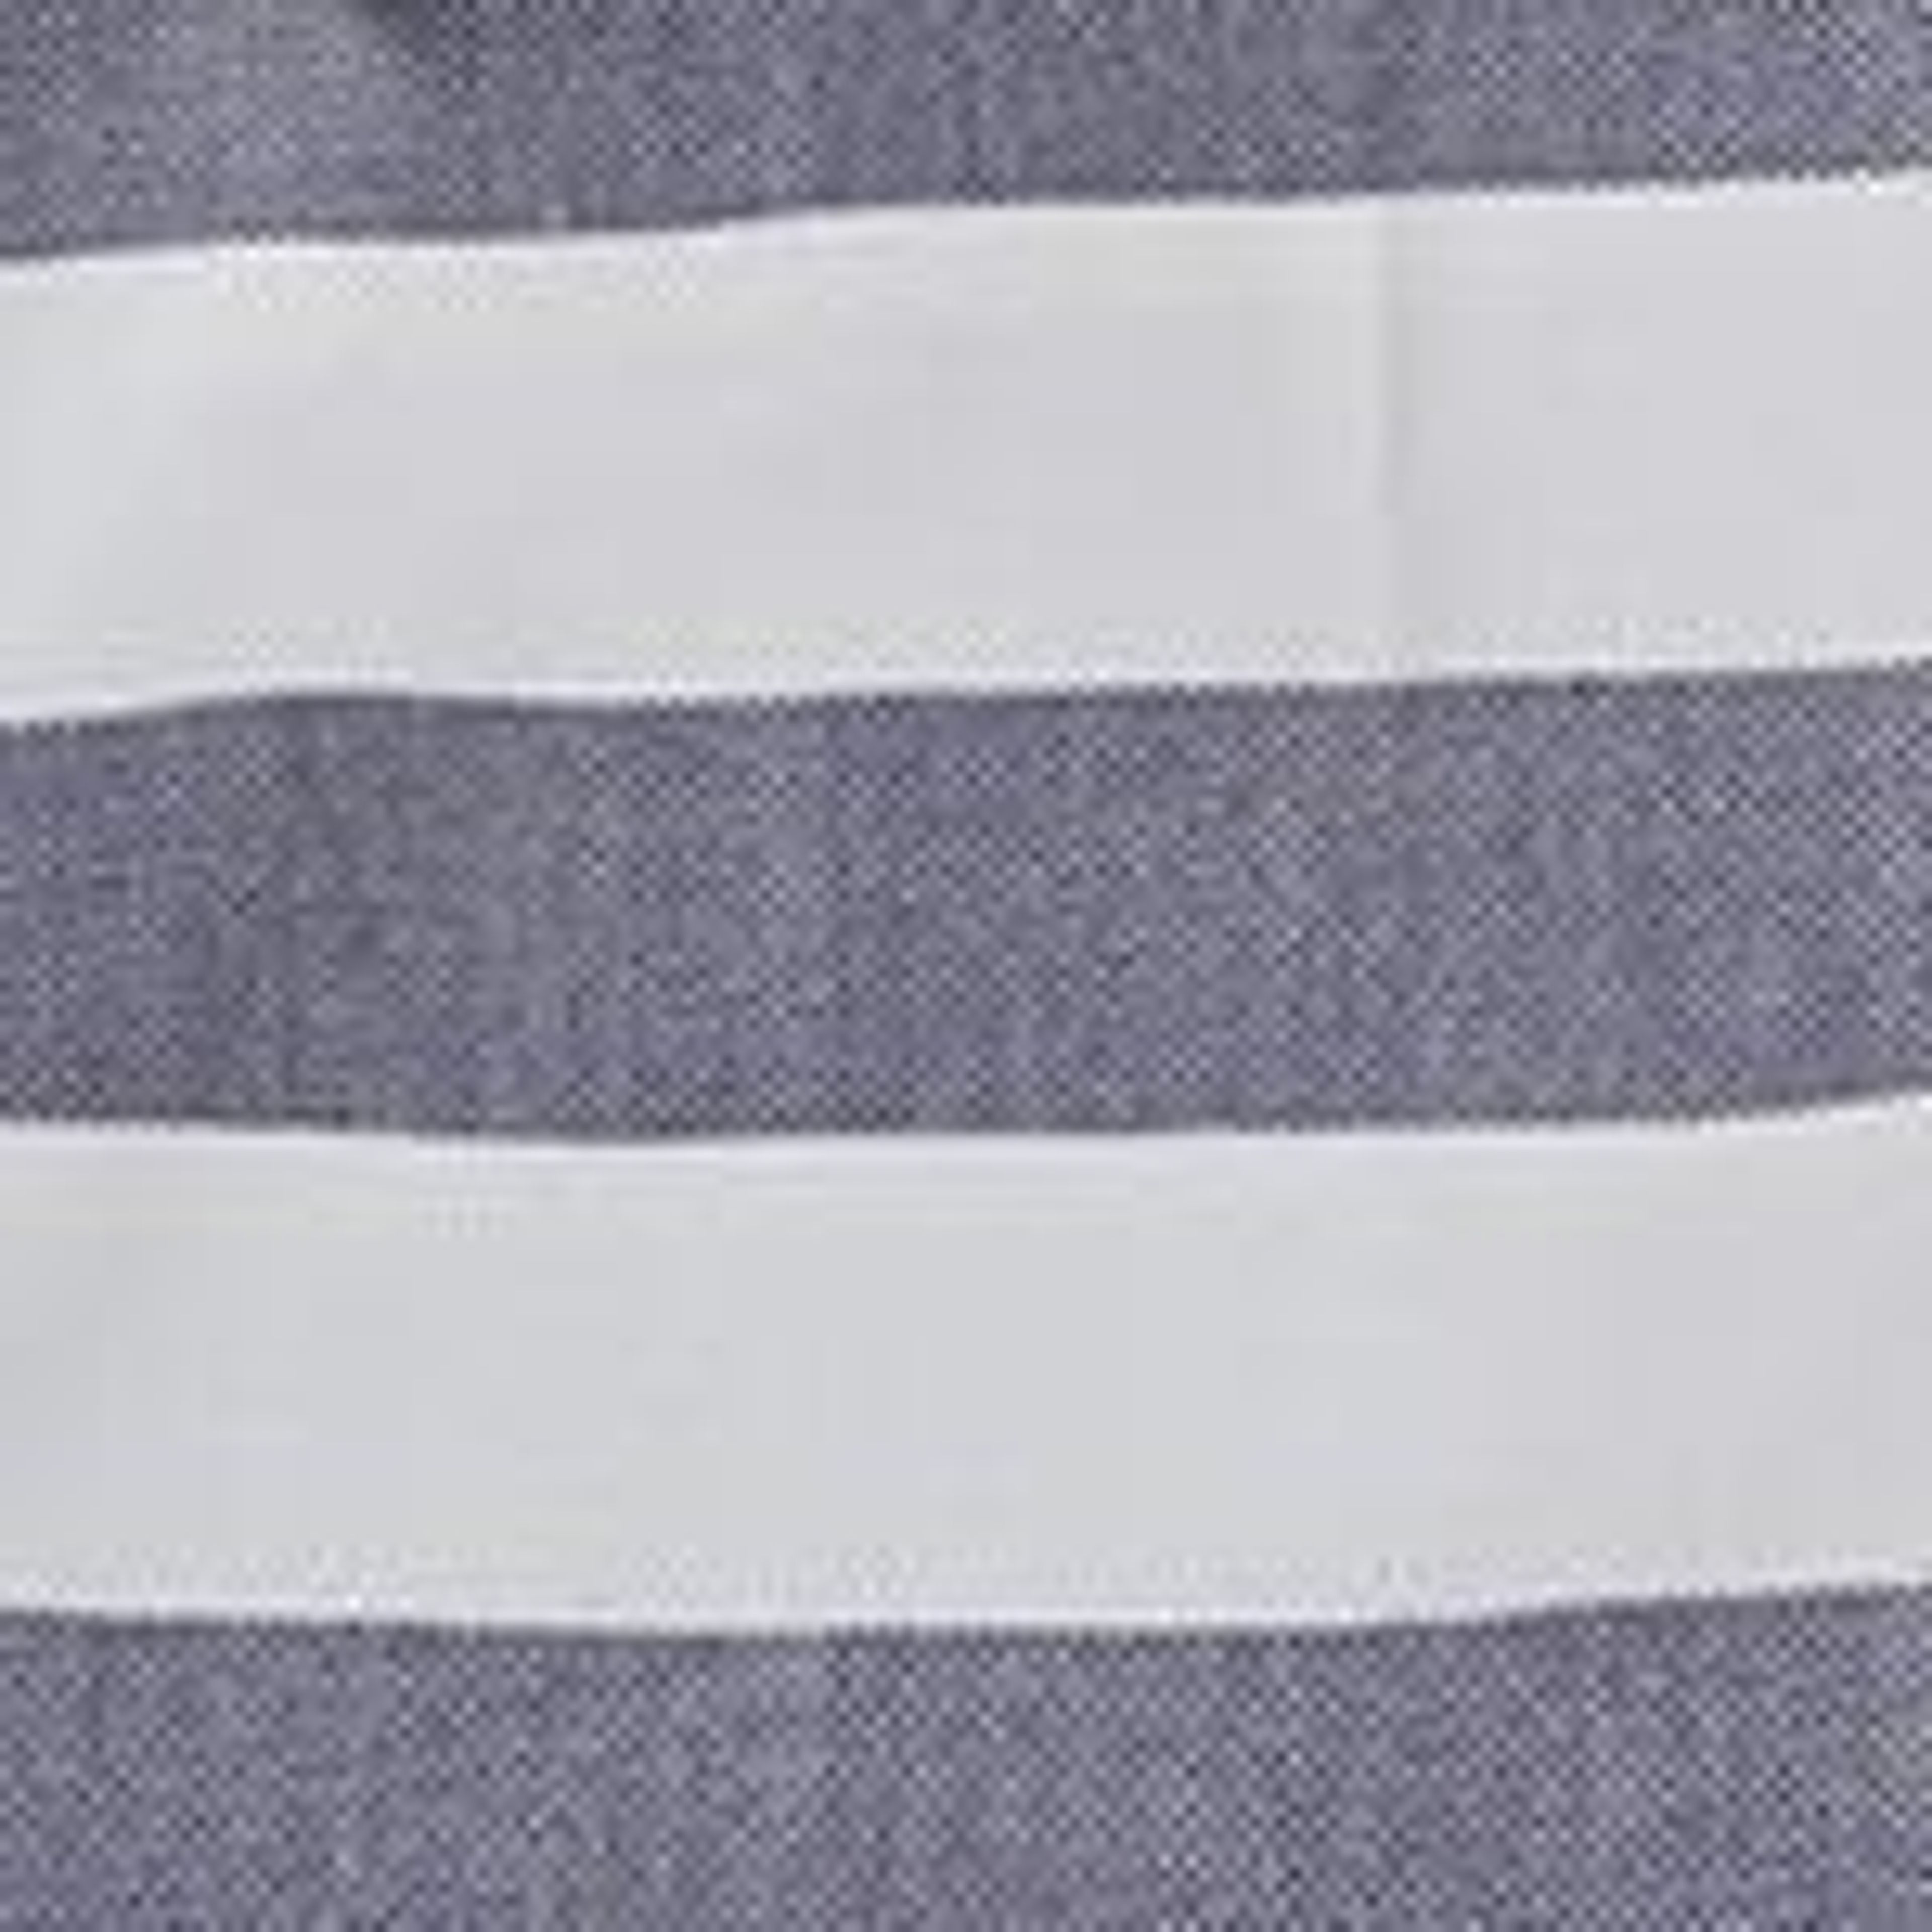 Filiz Hammam Towel [Dark blue/White]